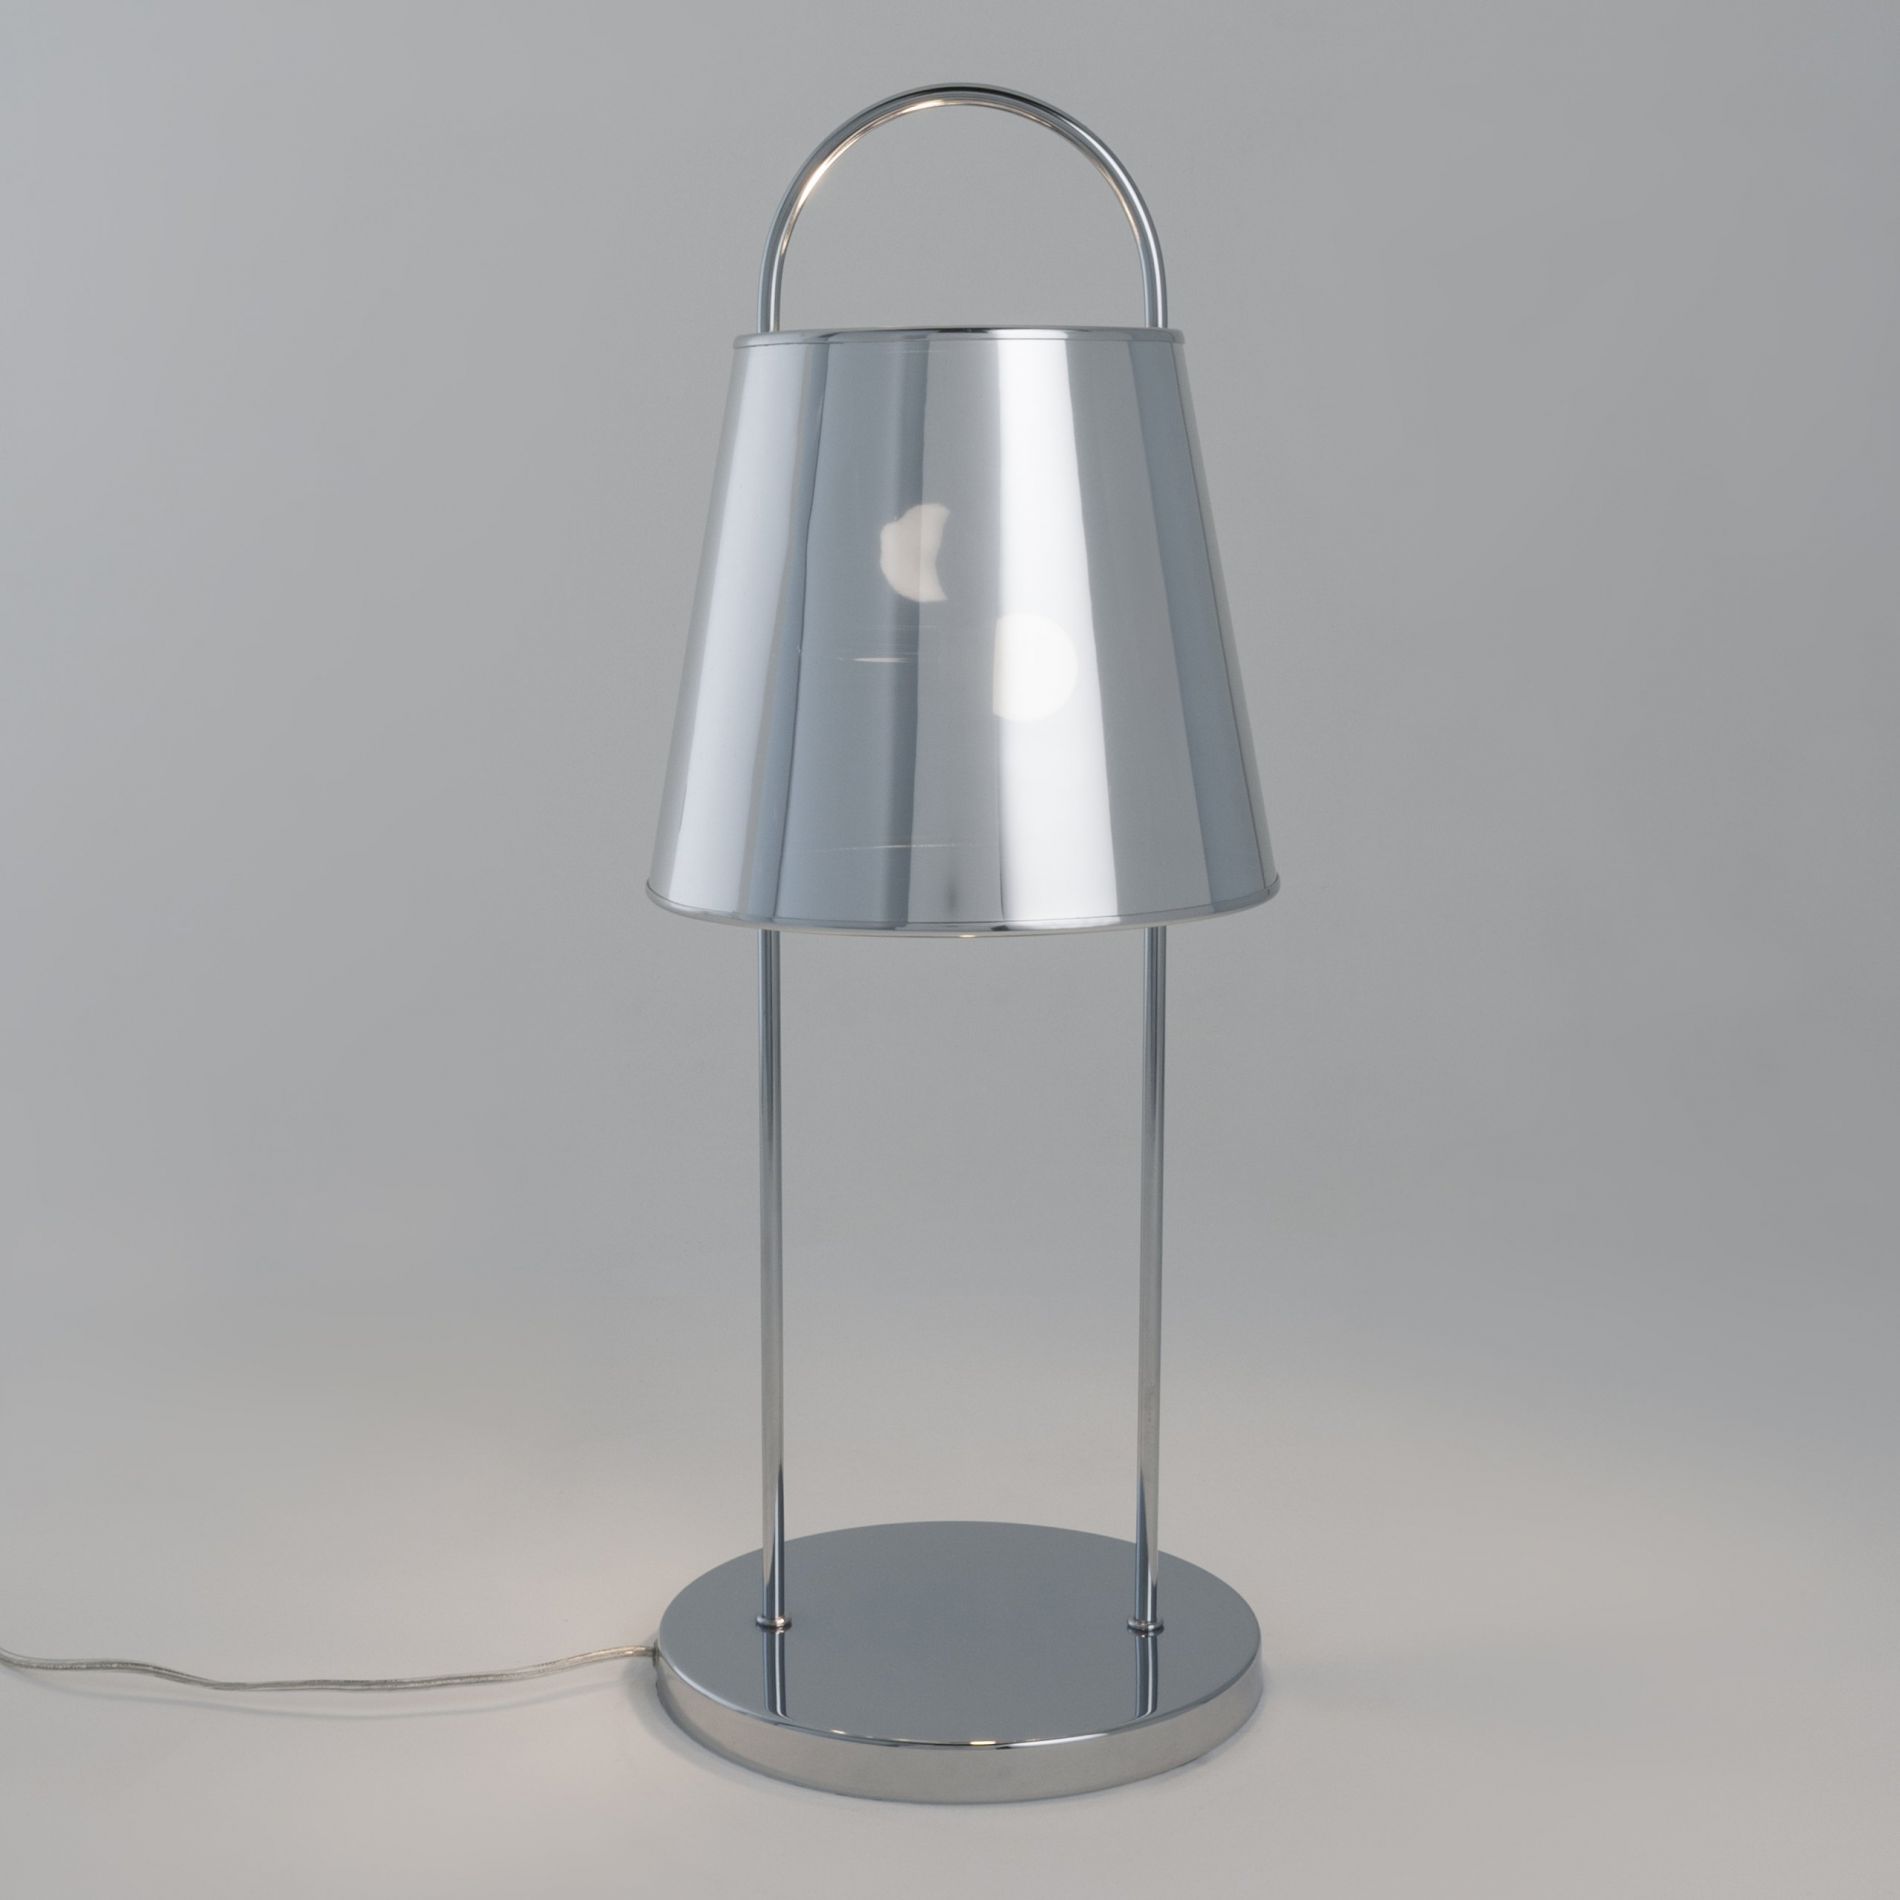 Lampe design touch SHAPE argentée en métal et PVC - Keria et